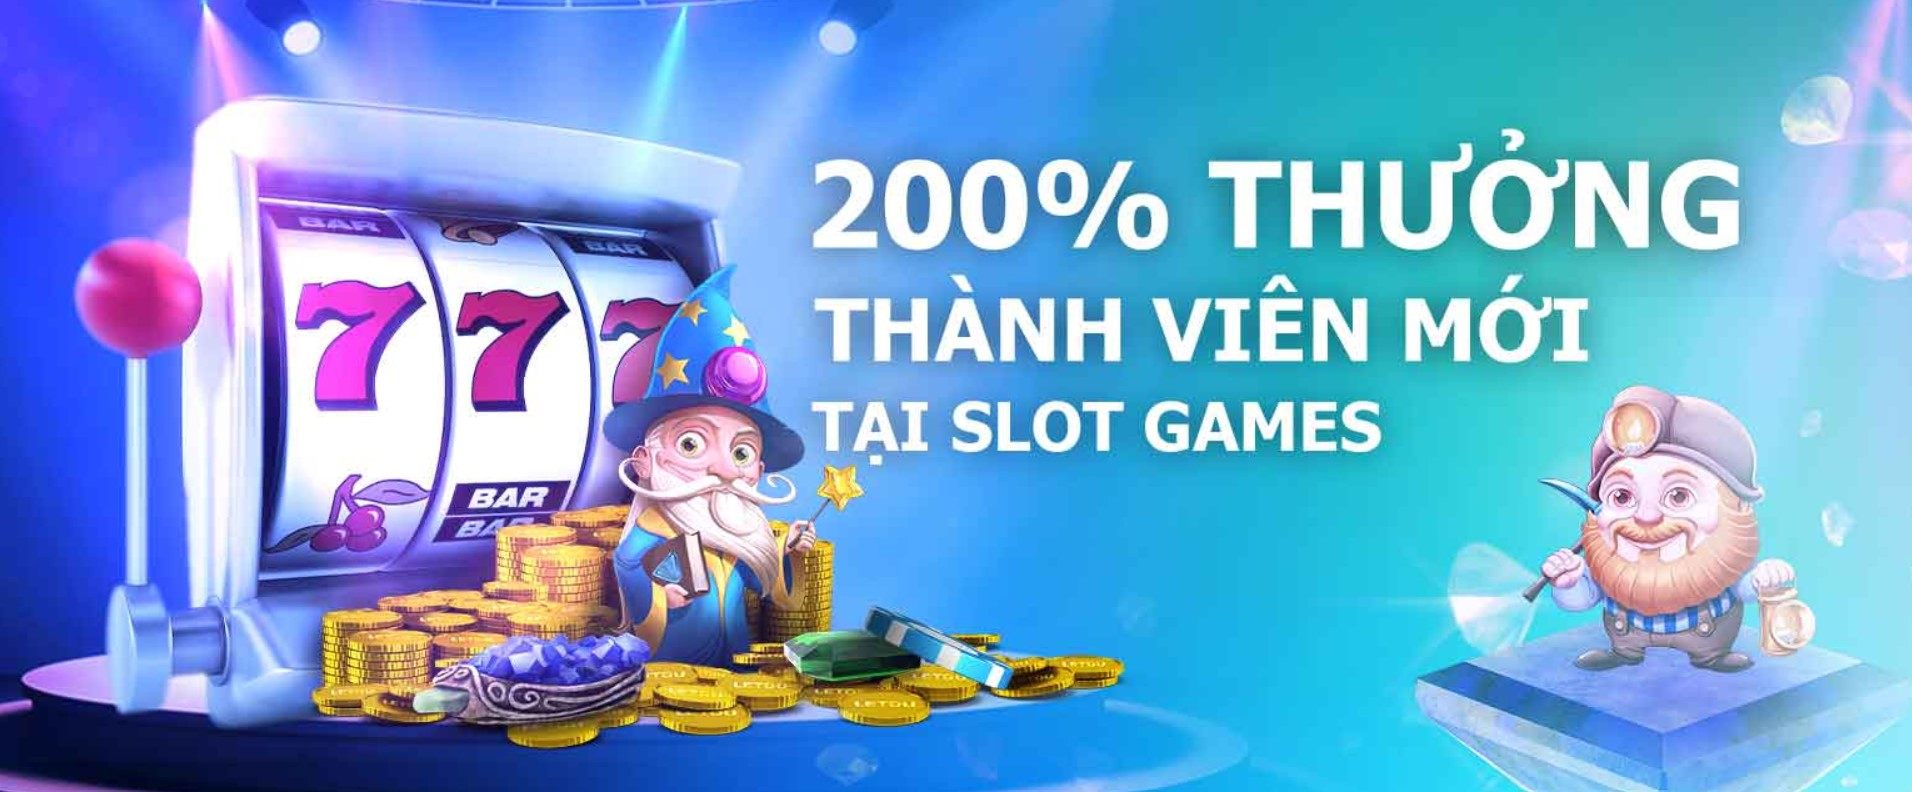 Slot game thưởng 200% tiền chào mừng